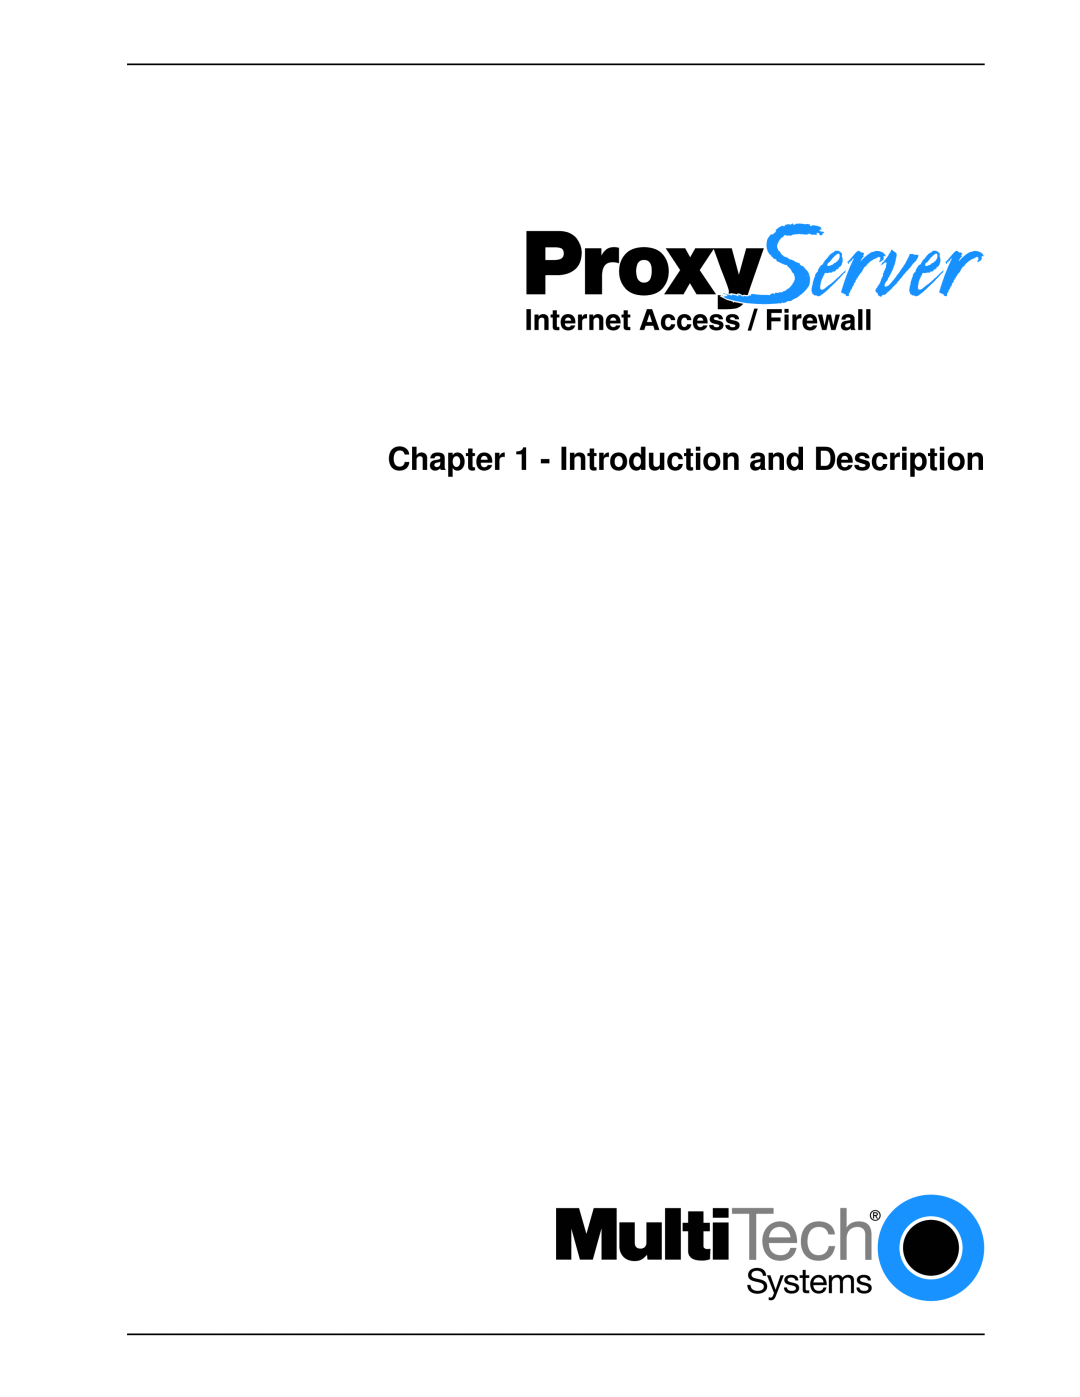 Multitech MTPSR1-120 manual Introduction and Description 